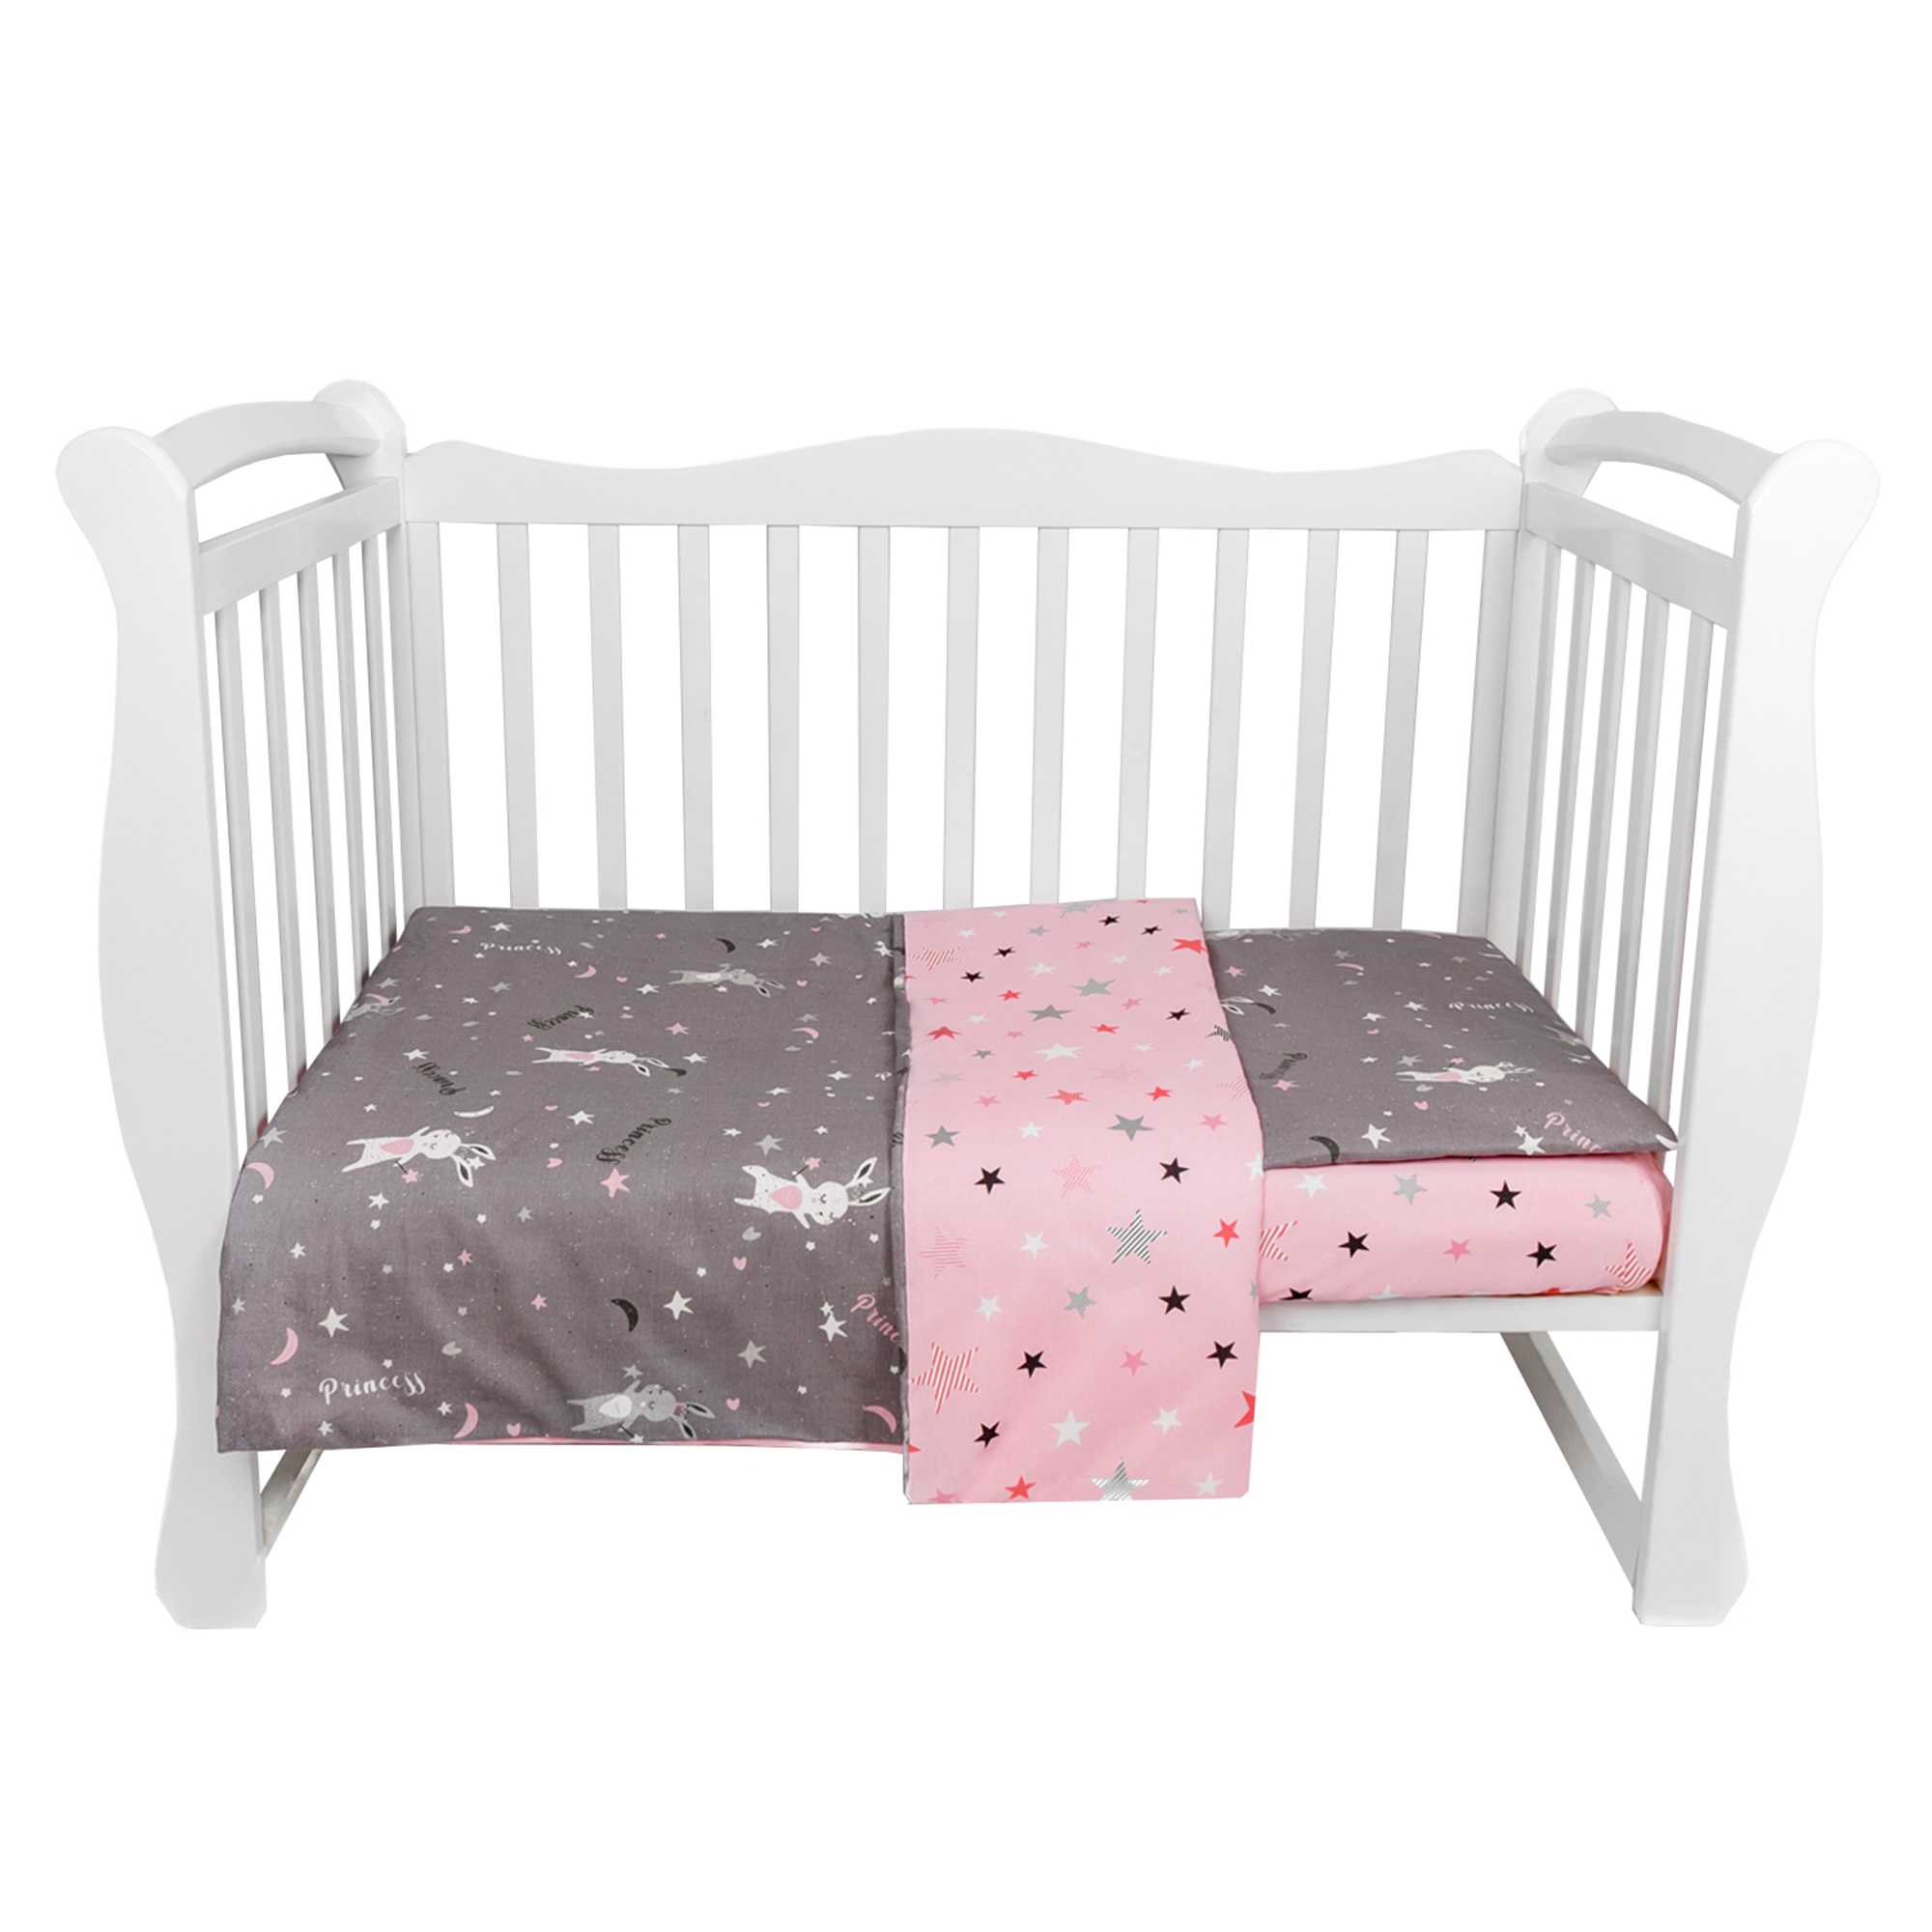 Комплект в кроватку 3 предмета AmaroBaby Baby Boom Princess серый/розовый